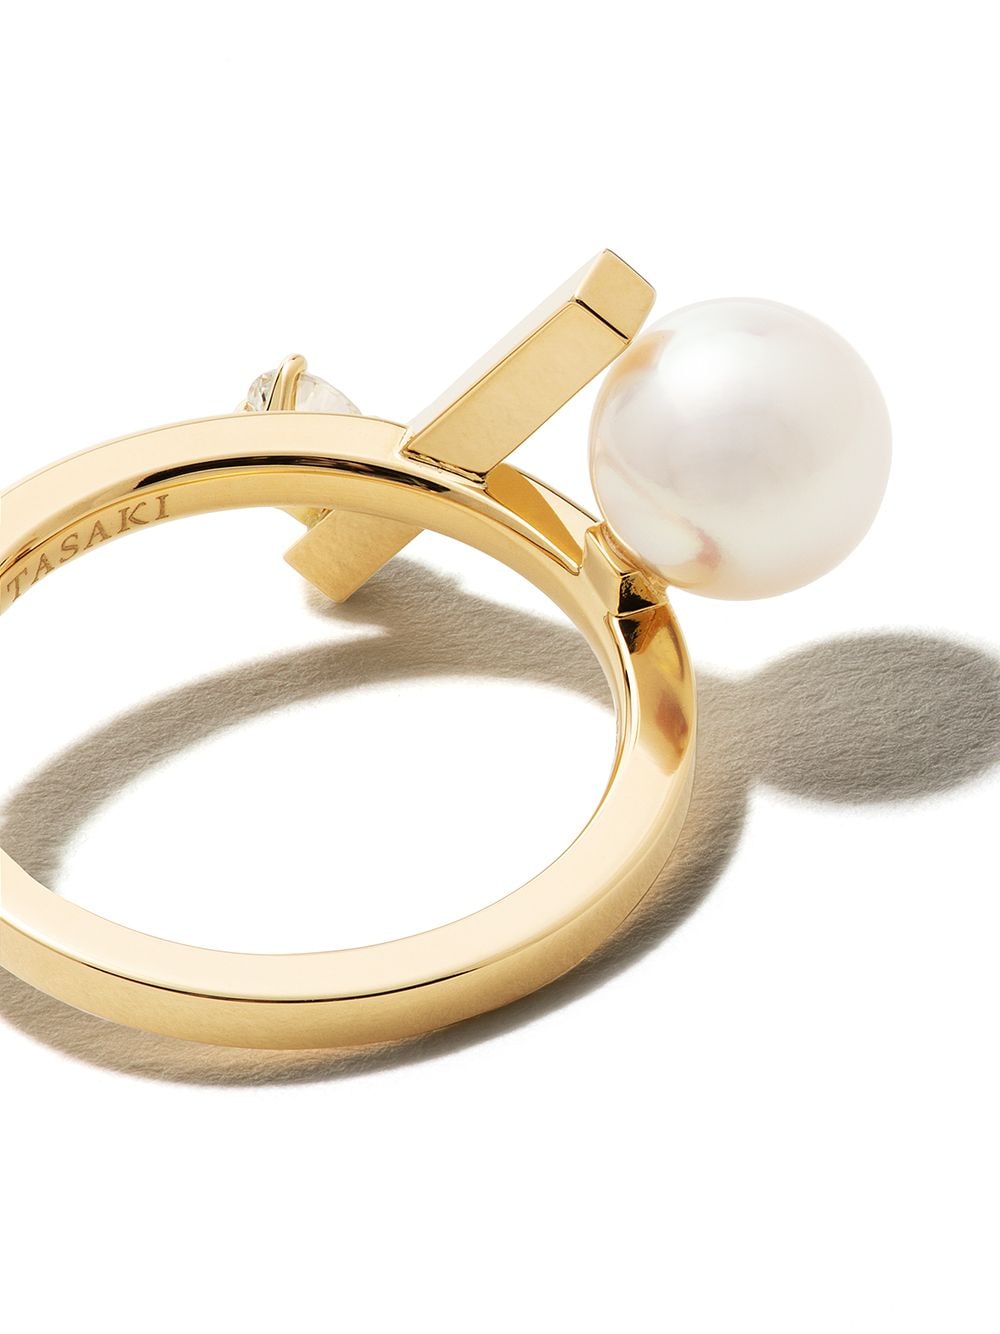 фото Tasaki кольцо balance cross akoya из желтого золота с жемчугом и бриллиантами